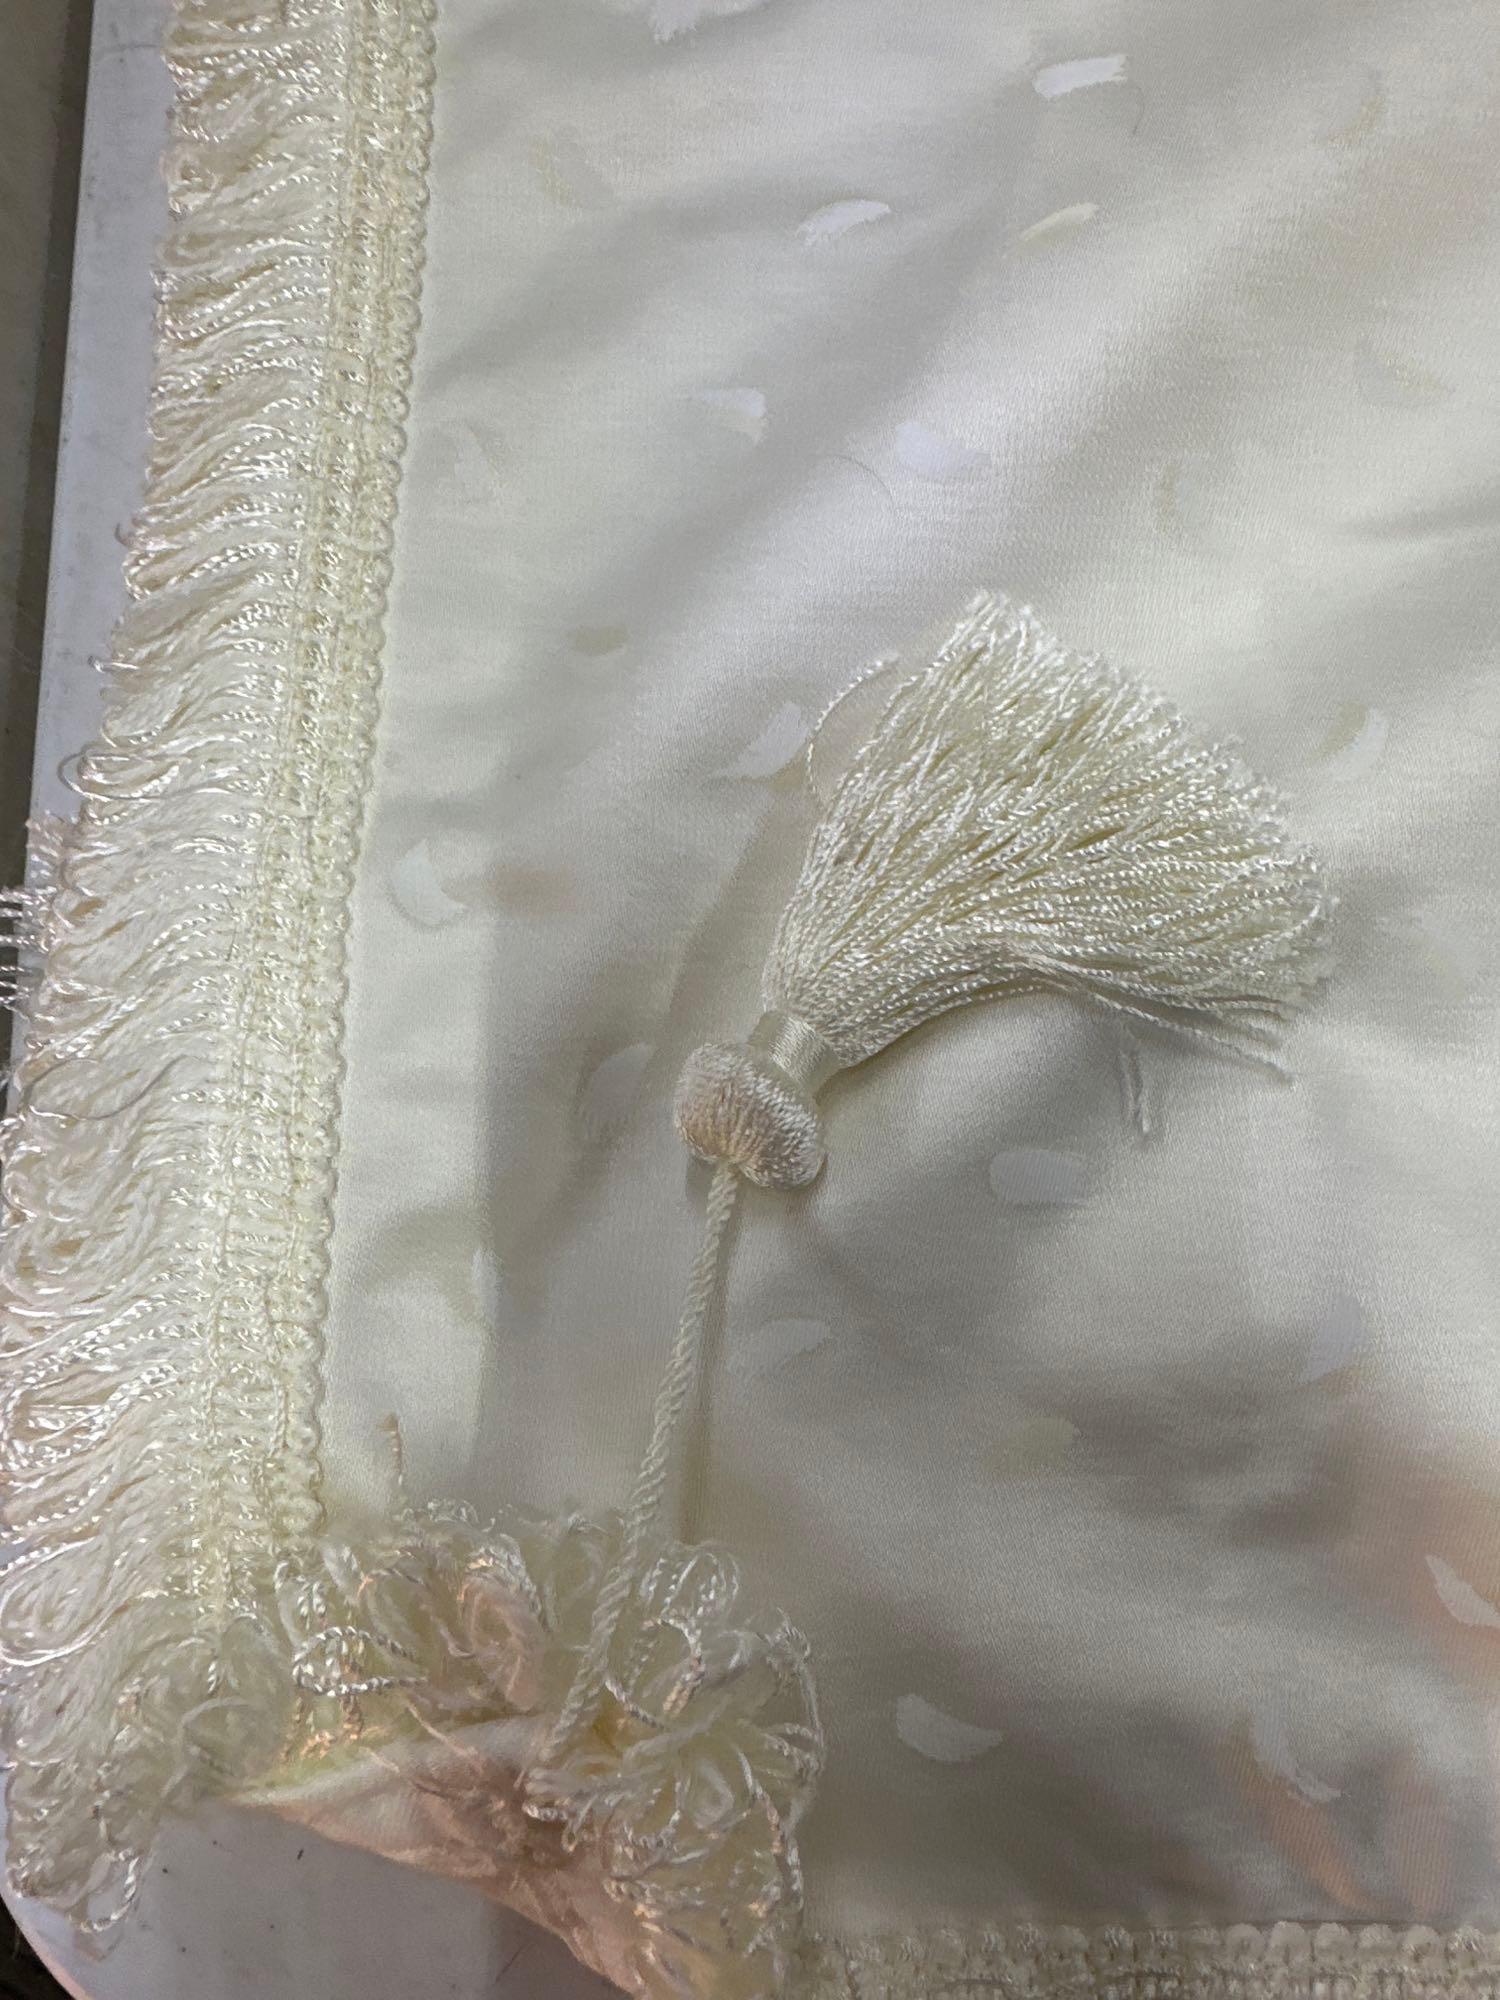 Decorative Cream Color Table Cloth